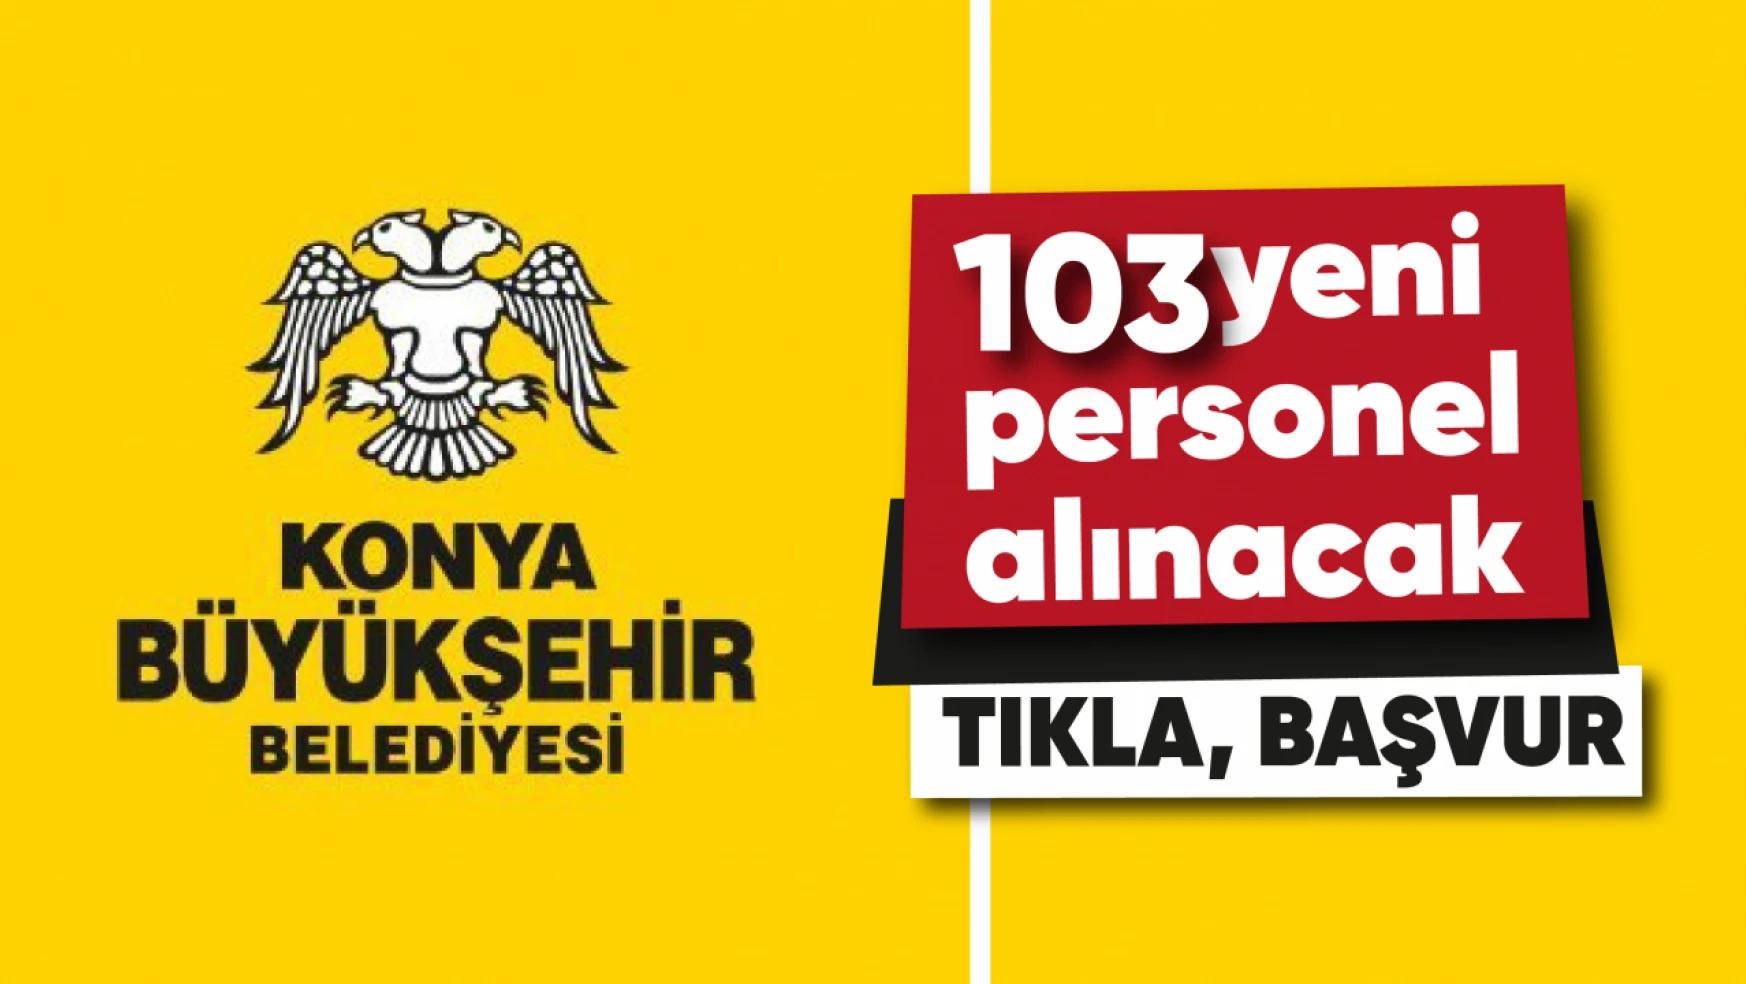 Konya Büyükşehir Belediyesi 103 yeni personel alacak | Tıkla başvur